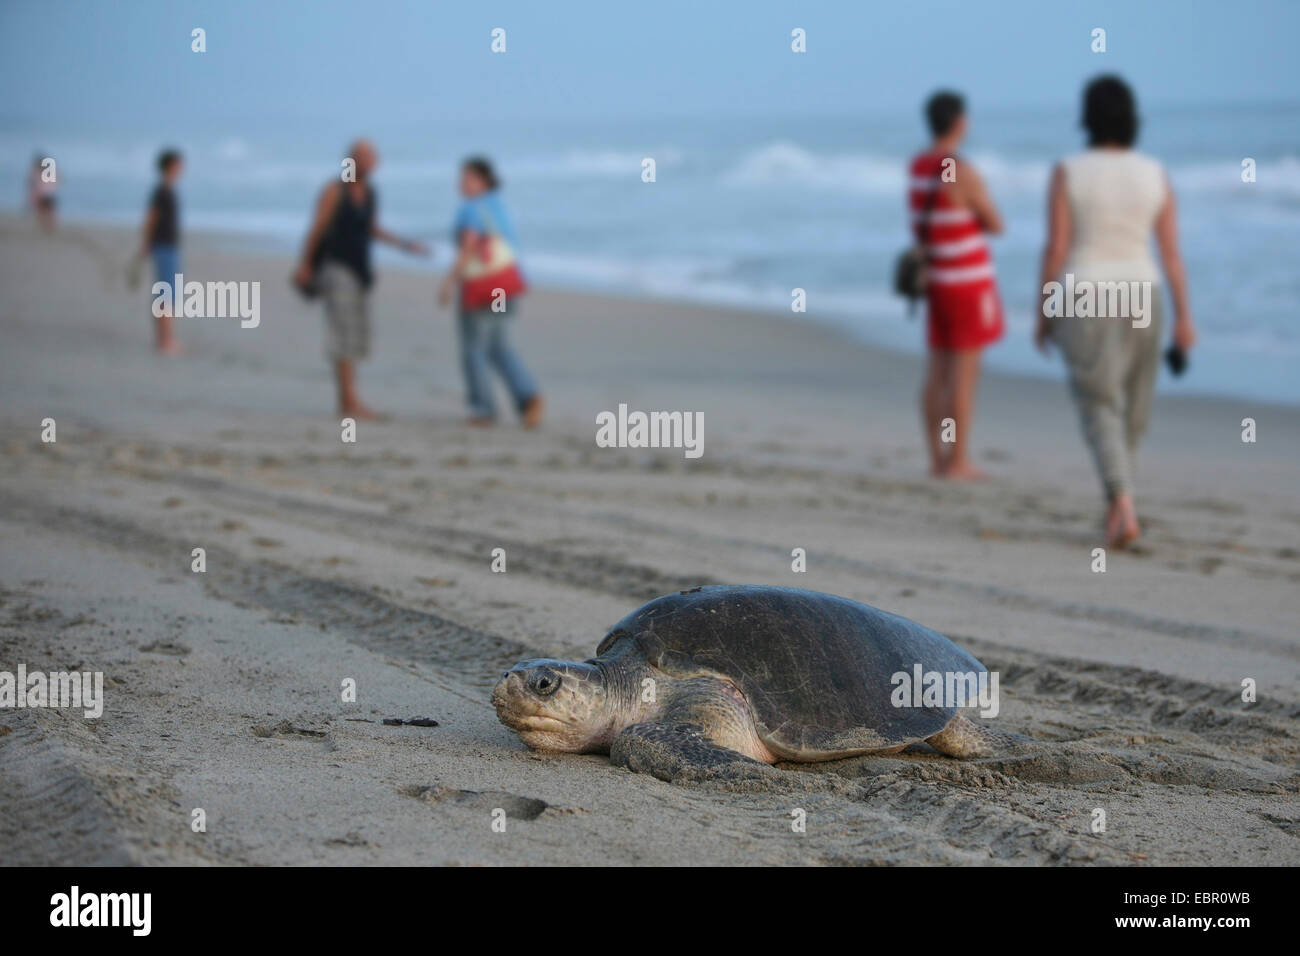 grüne Schildkröte, Turtle Rock, Fleisch Schildkröten (Chelonia Mydas), Schildkröte kriecht am Strand für Ei Ablagerung, Mexiko, Oaxaca Stockfoto